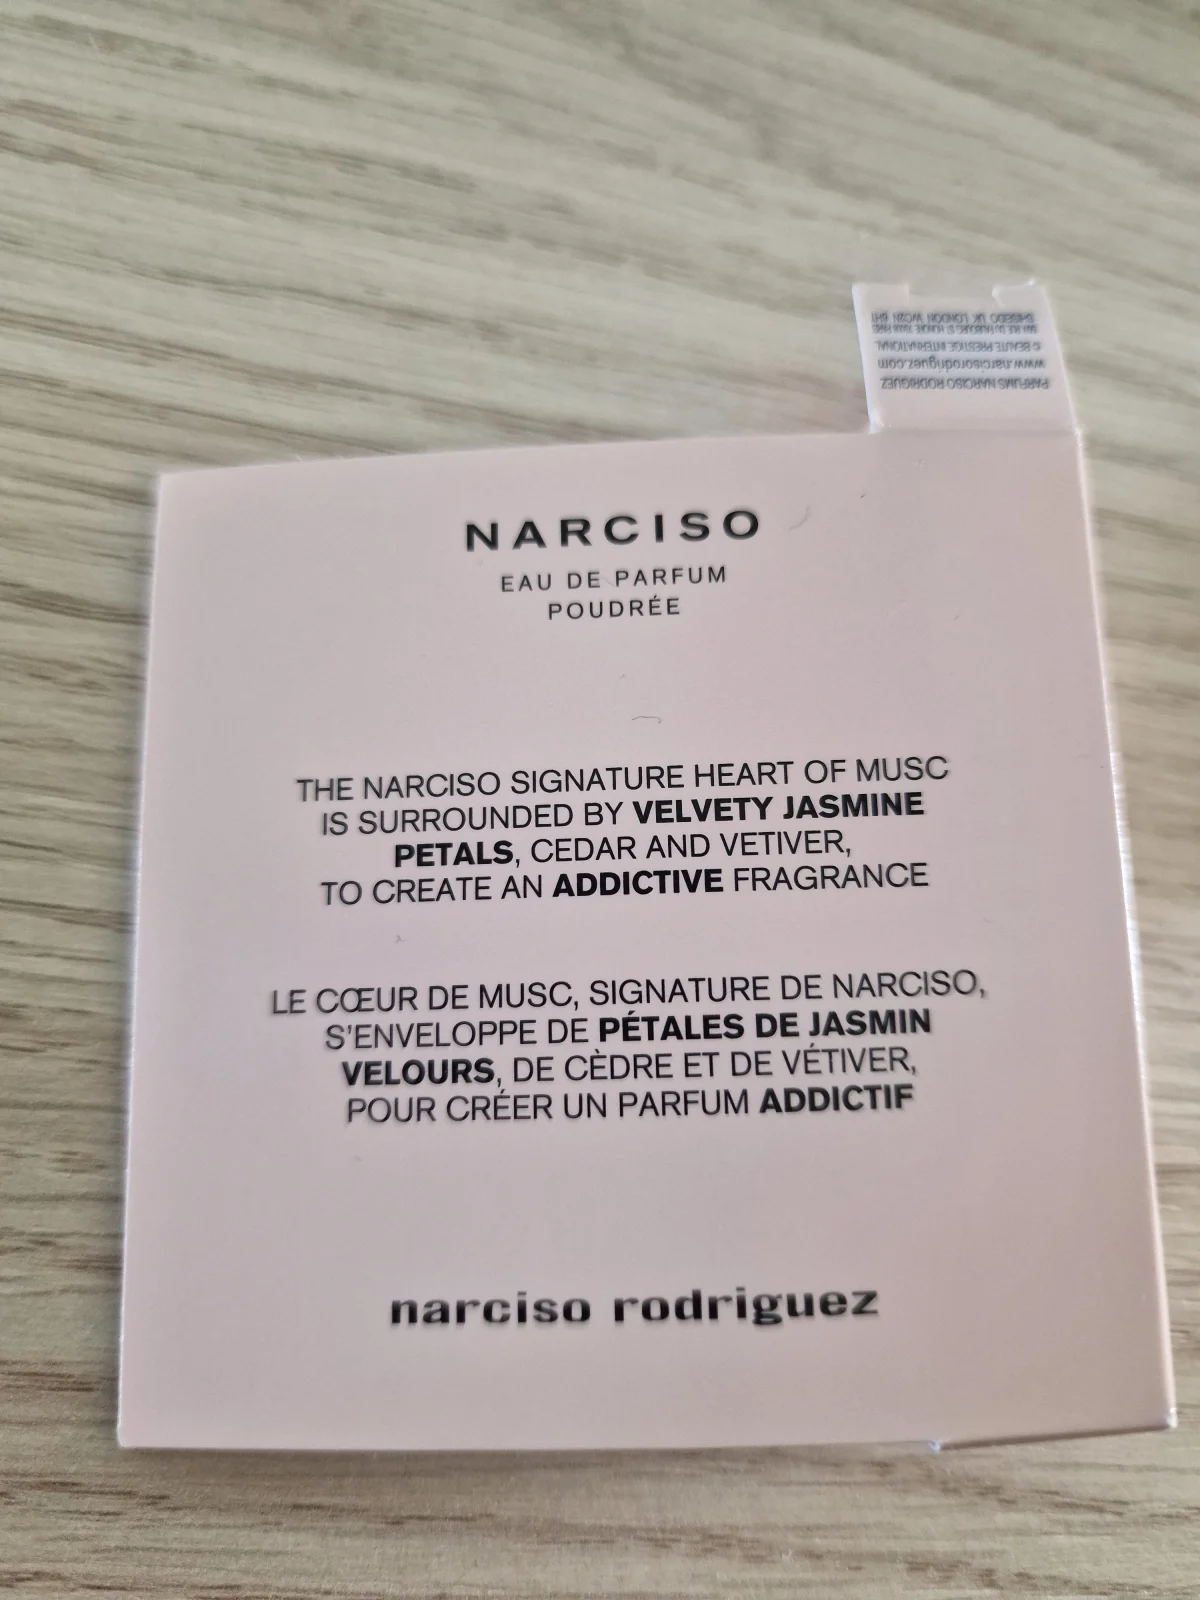 Narciso Rodriguez Narciso Poudrée Eau de Parfum - review image